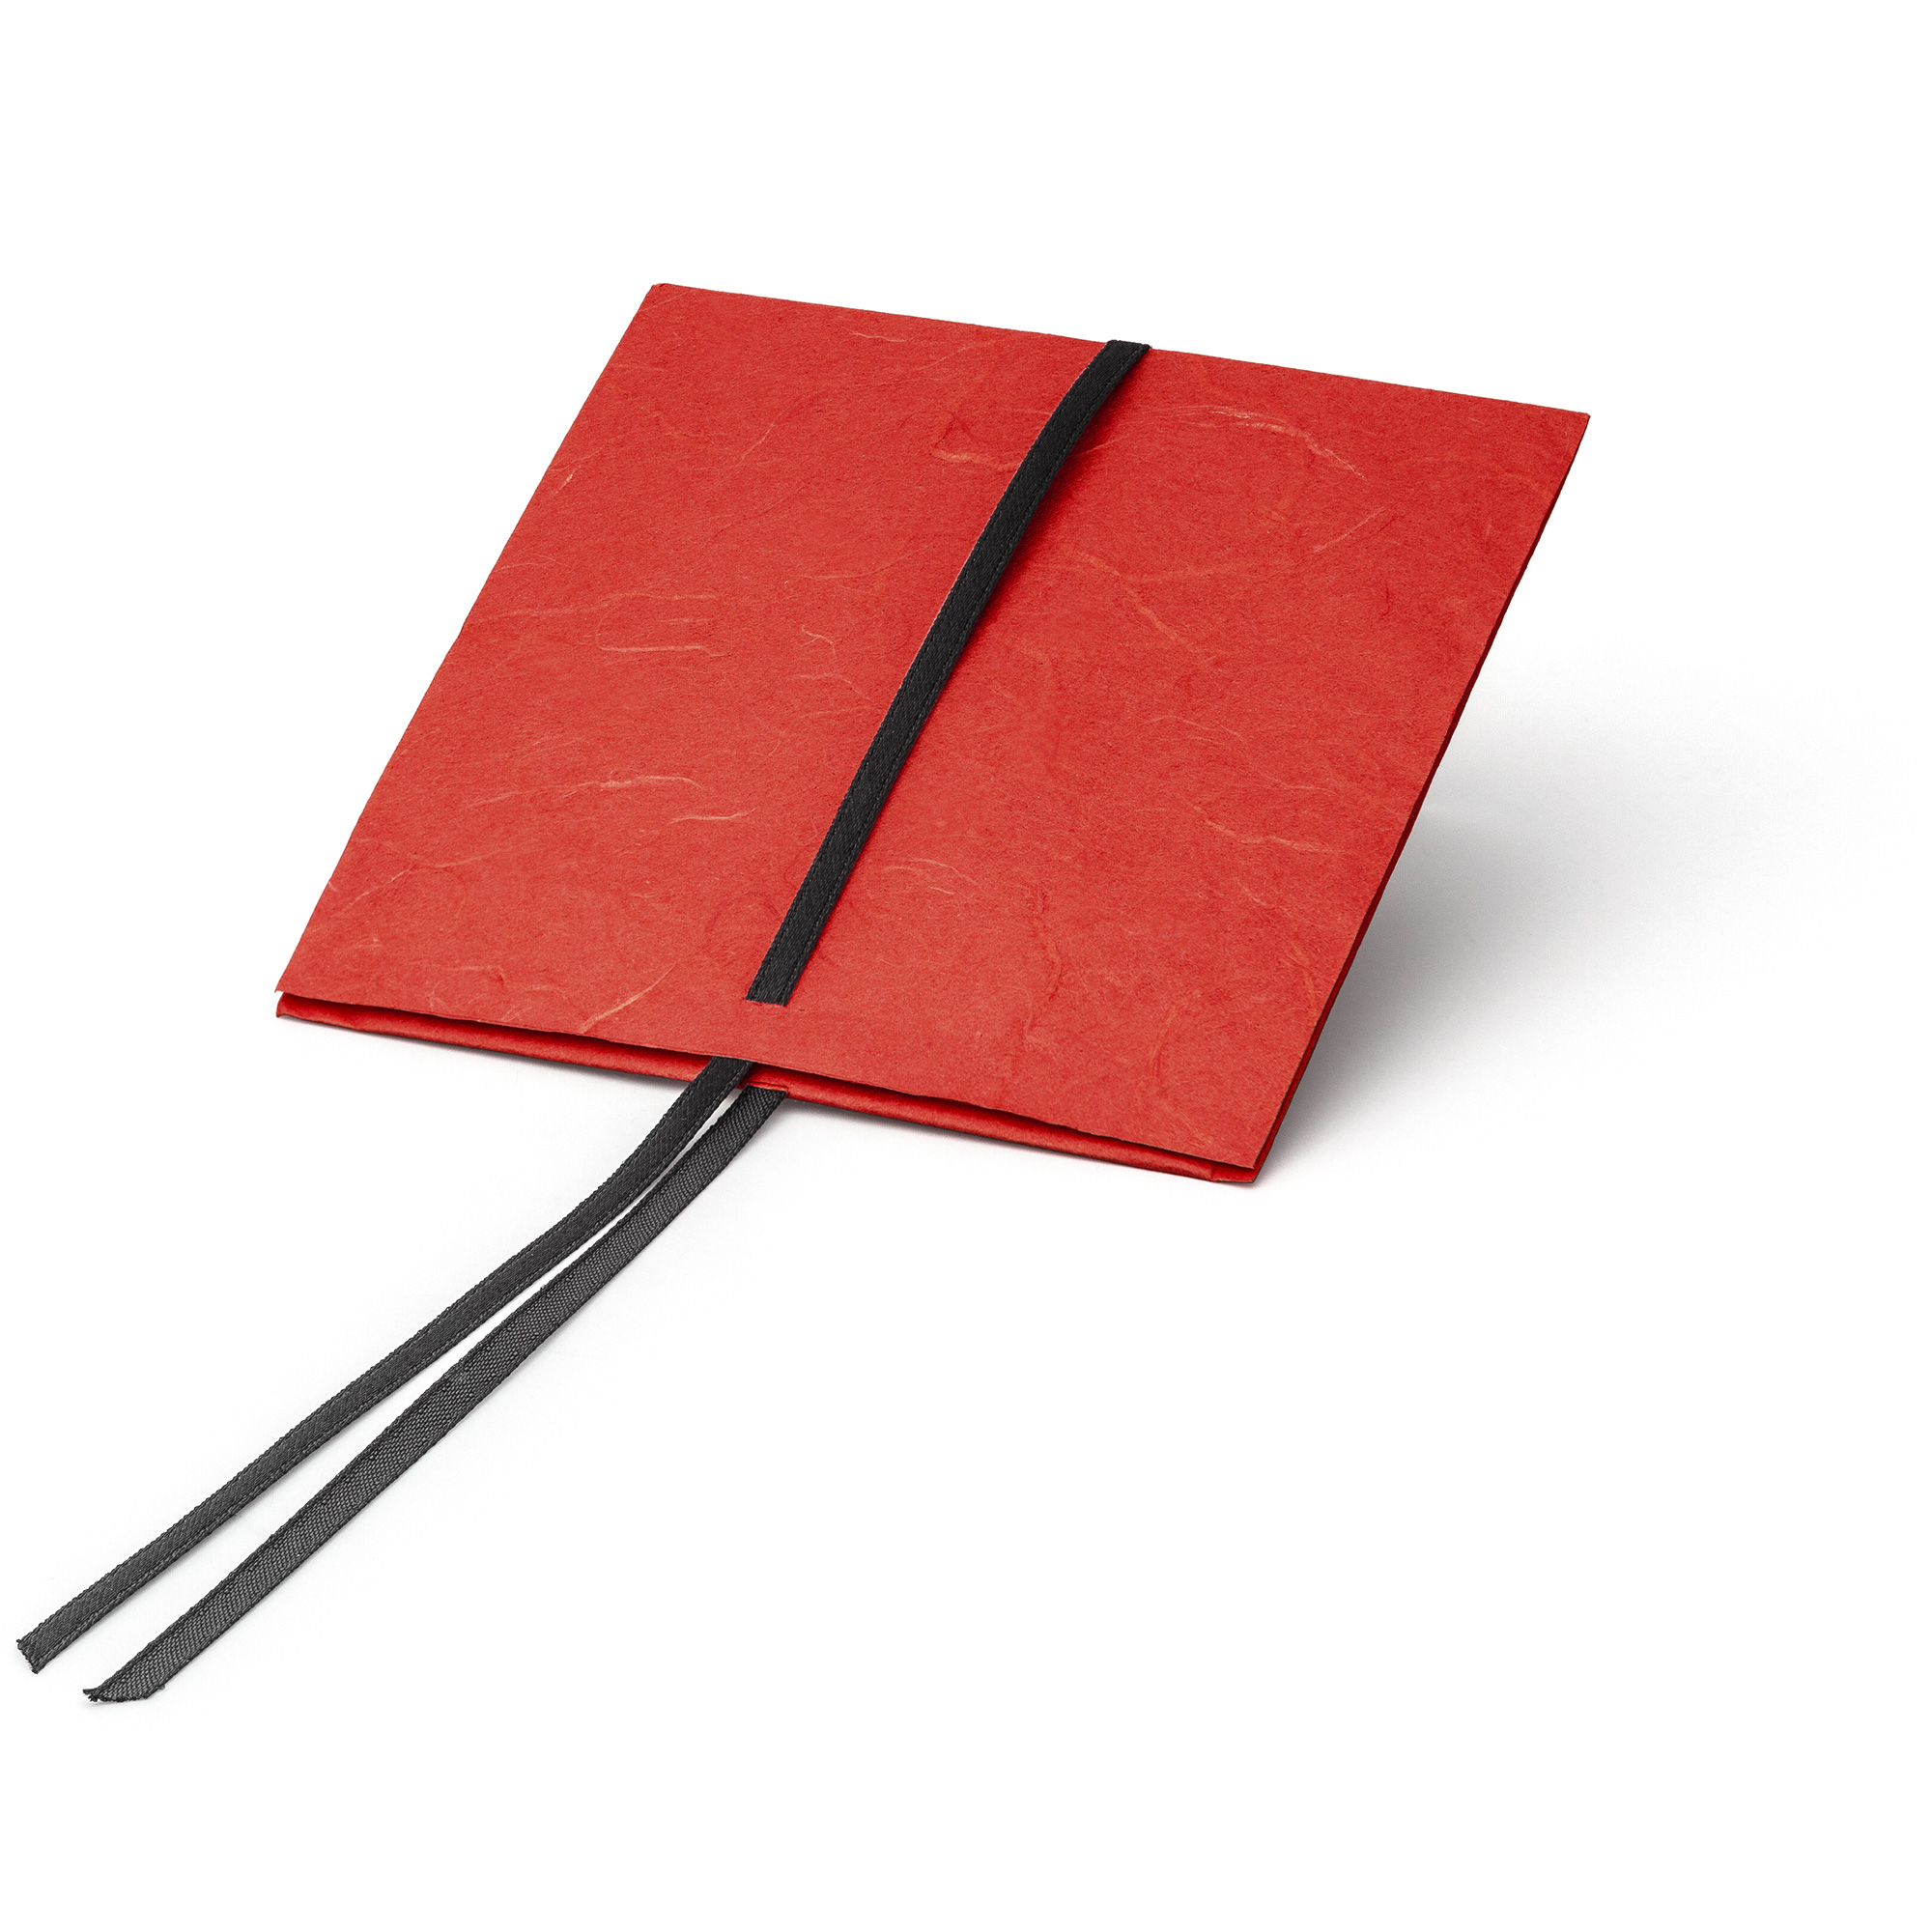 Paperbag large, 100 x 100 mm, red/ black ribbon